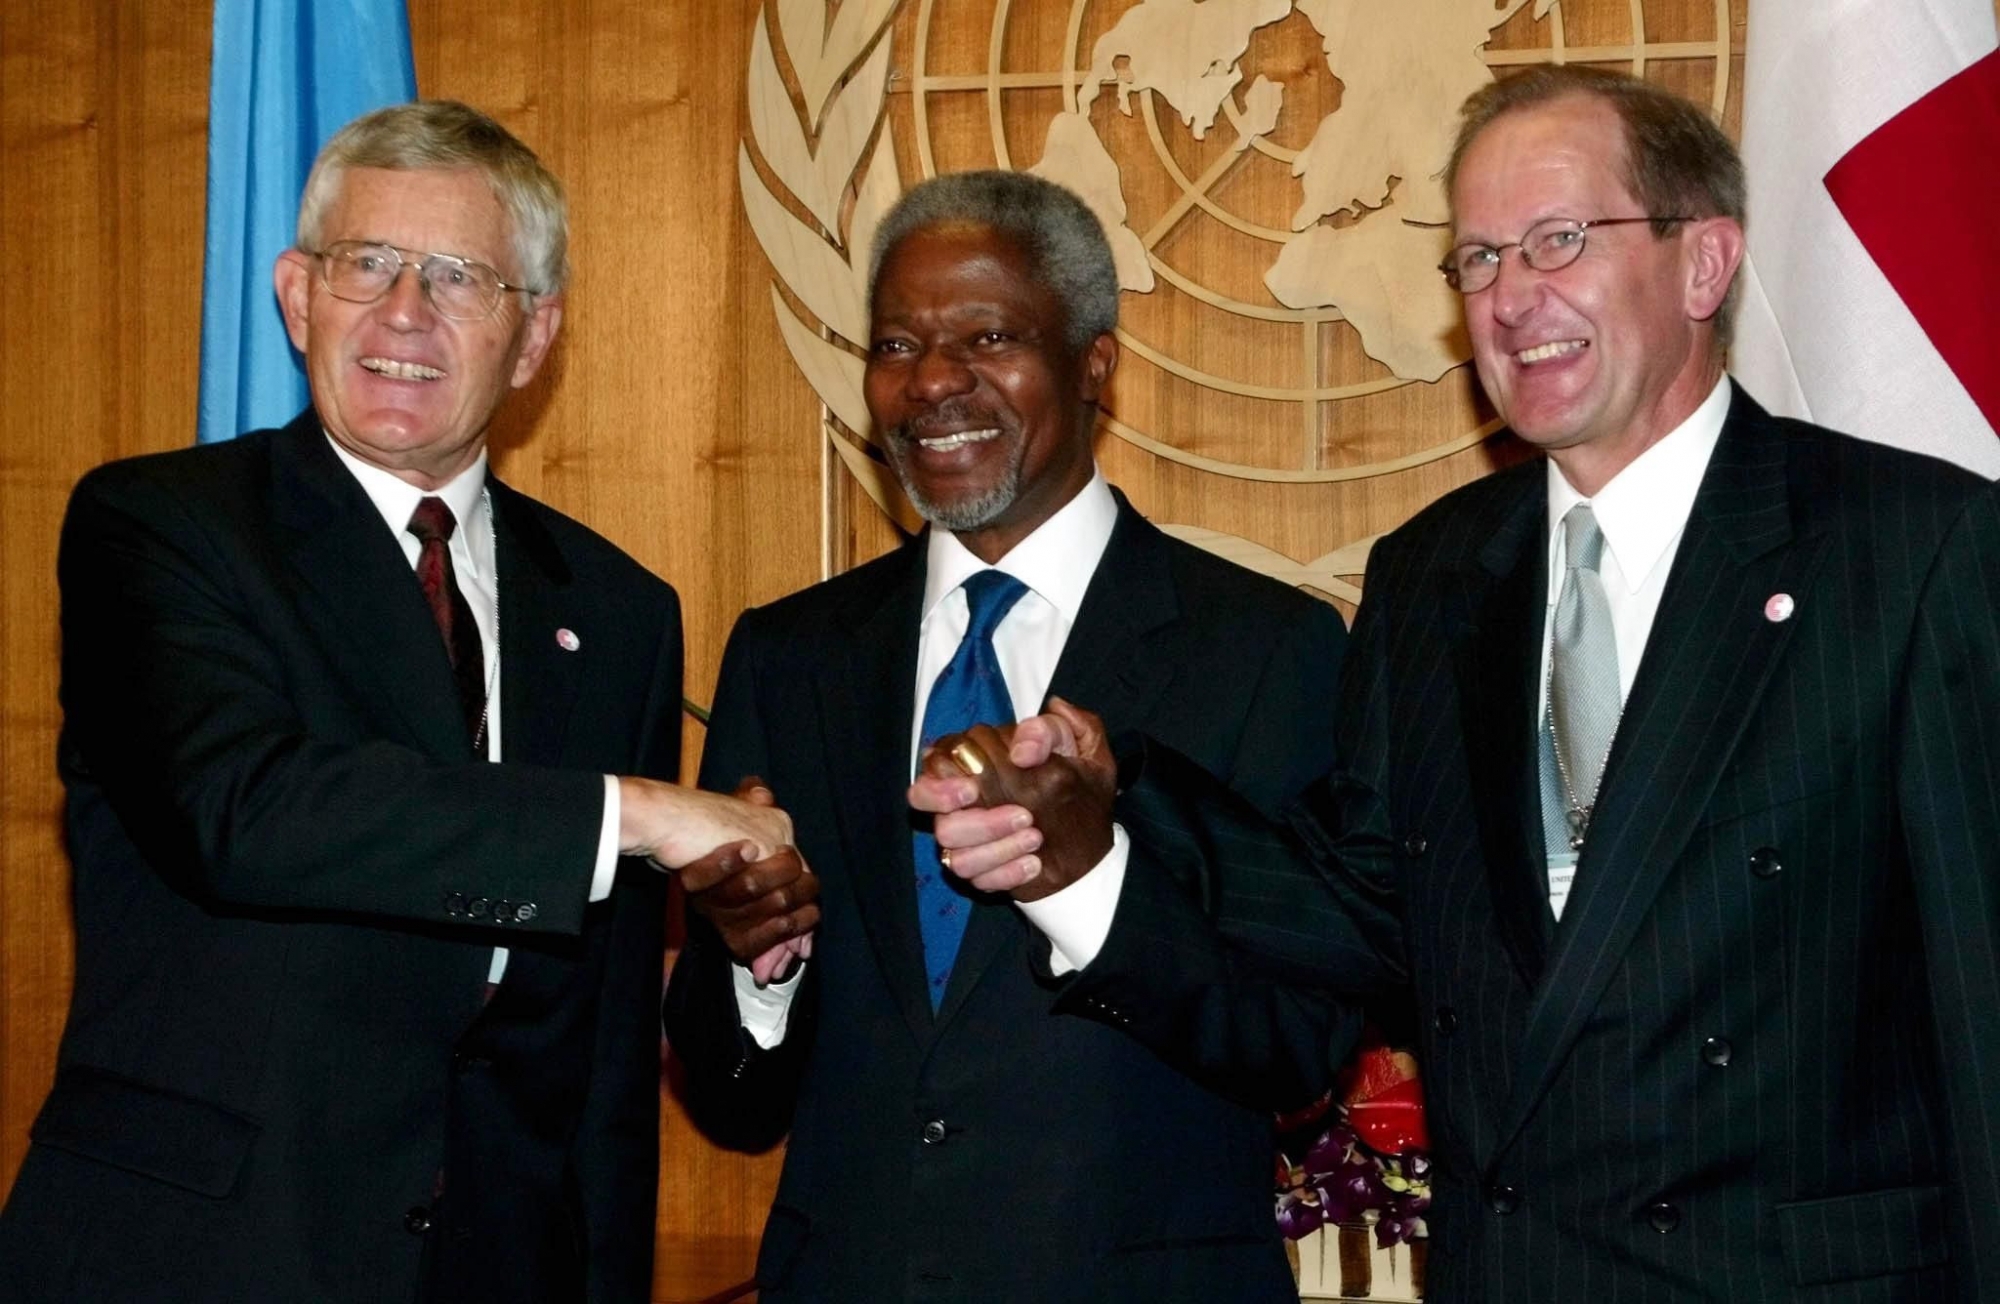 Le secrétaire général de l’ONU Kofi Annan accueille les conseillers fédéraux Kaspar Villiger (à gauche) et Joseph Deiss à New York.